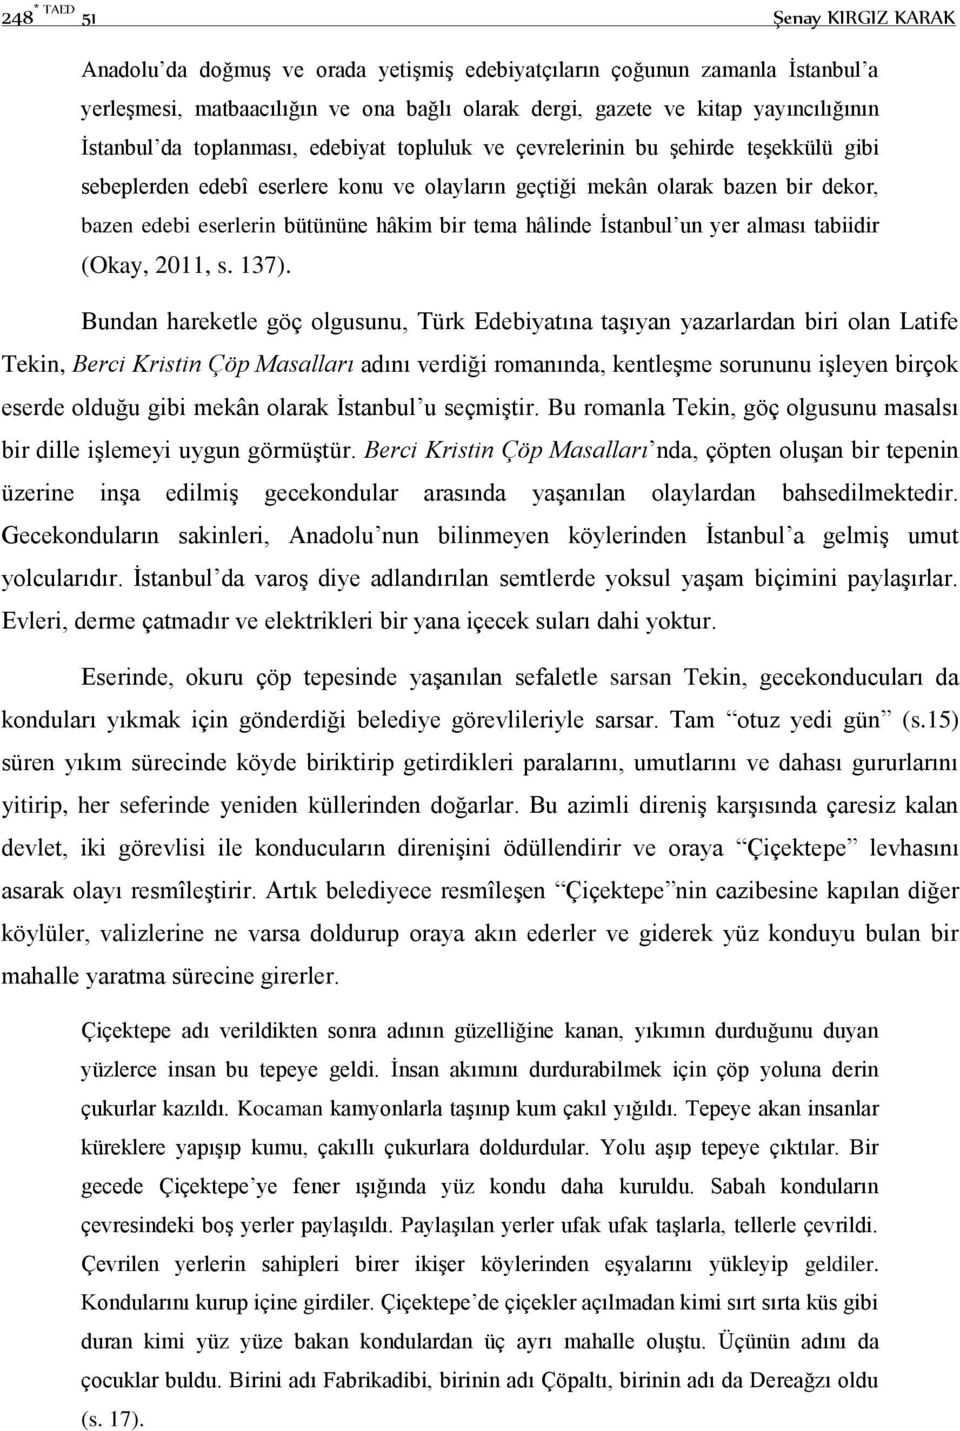 hâkim bir tema hâlinde İstanbul un yer alması tabiidir (Okay, 2011, s. 137).